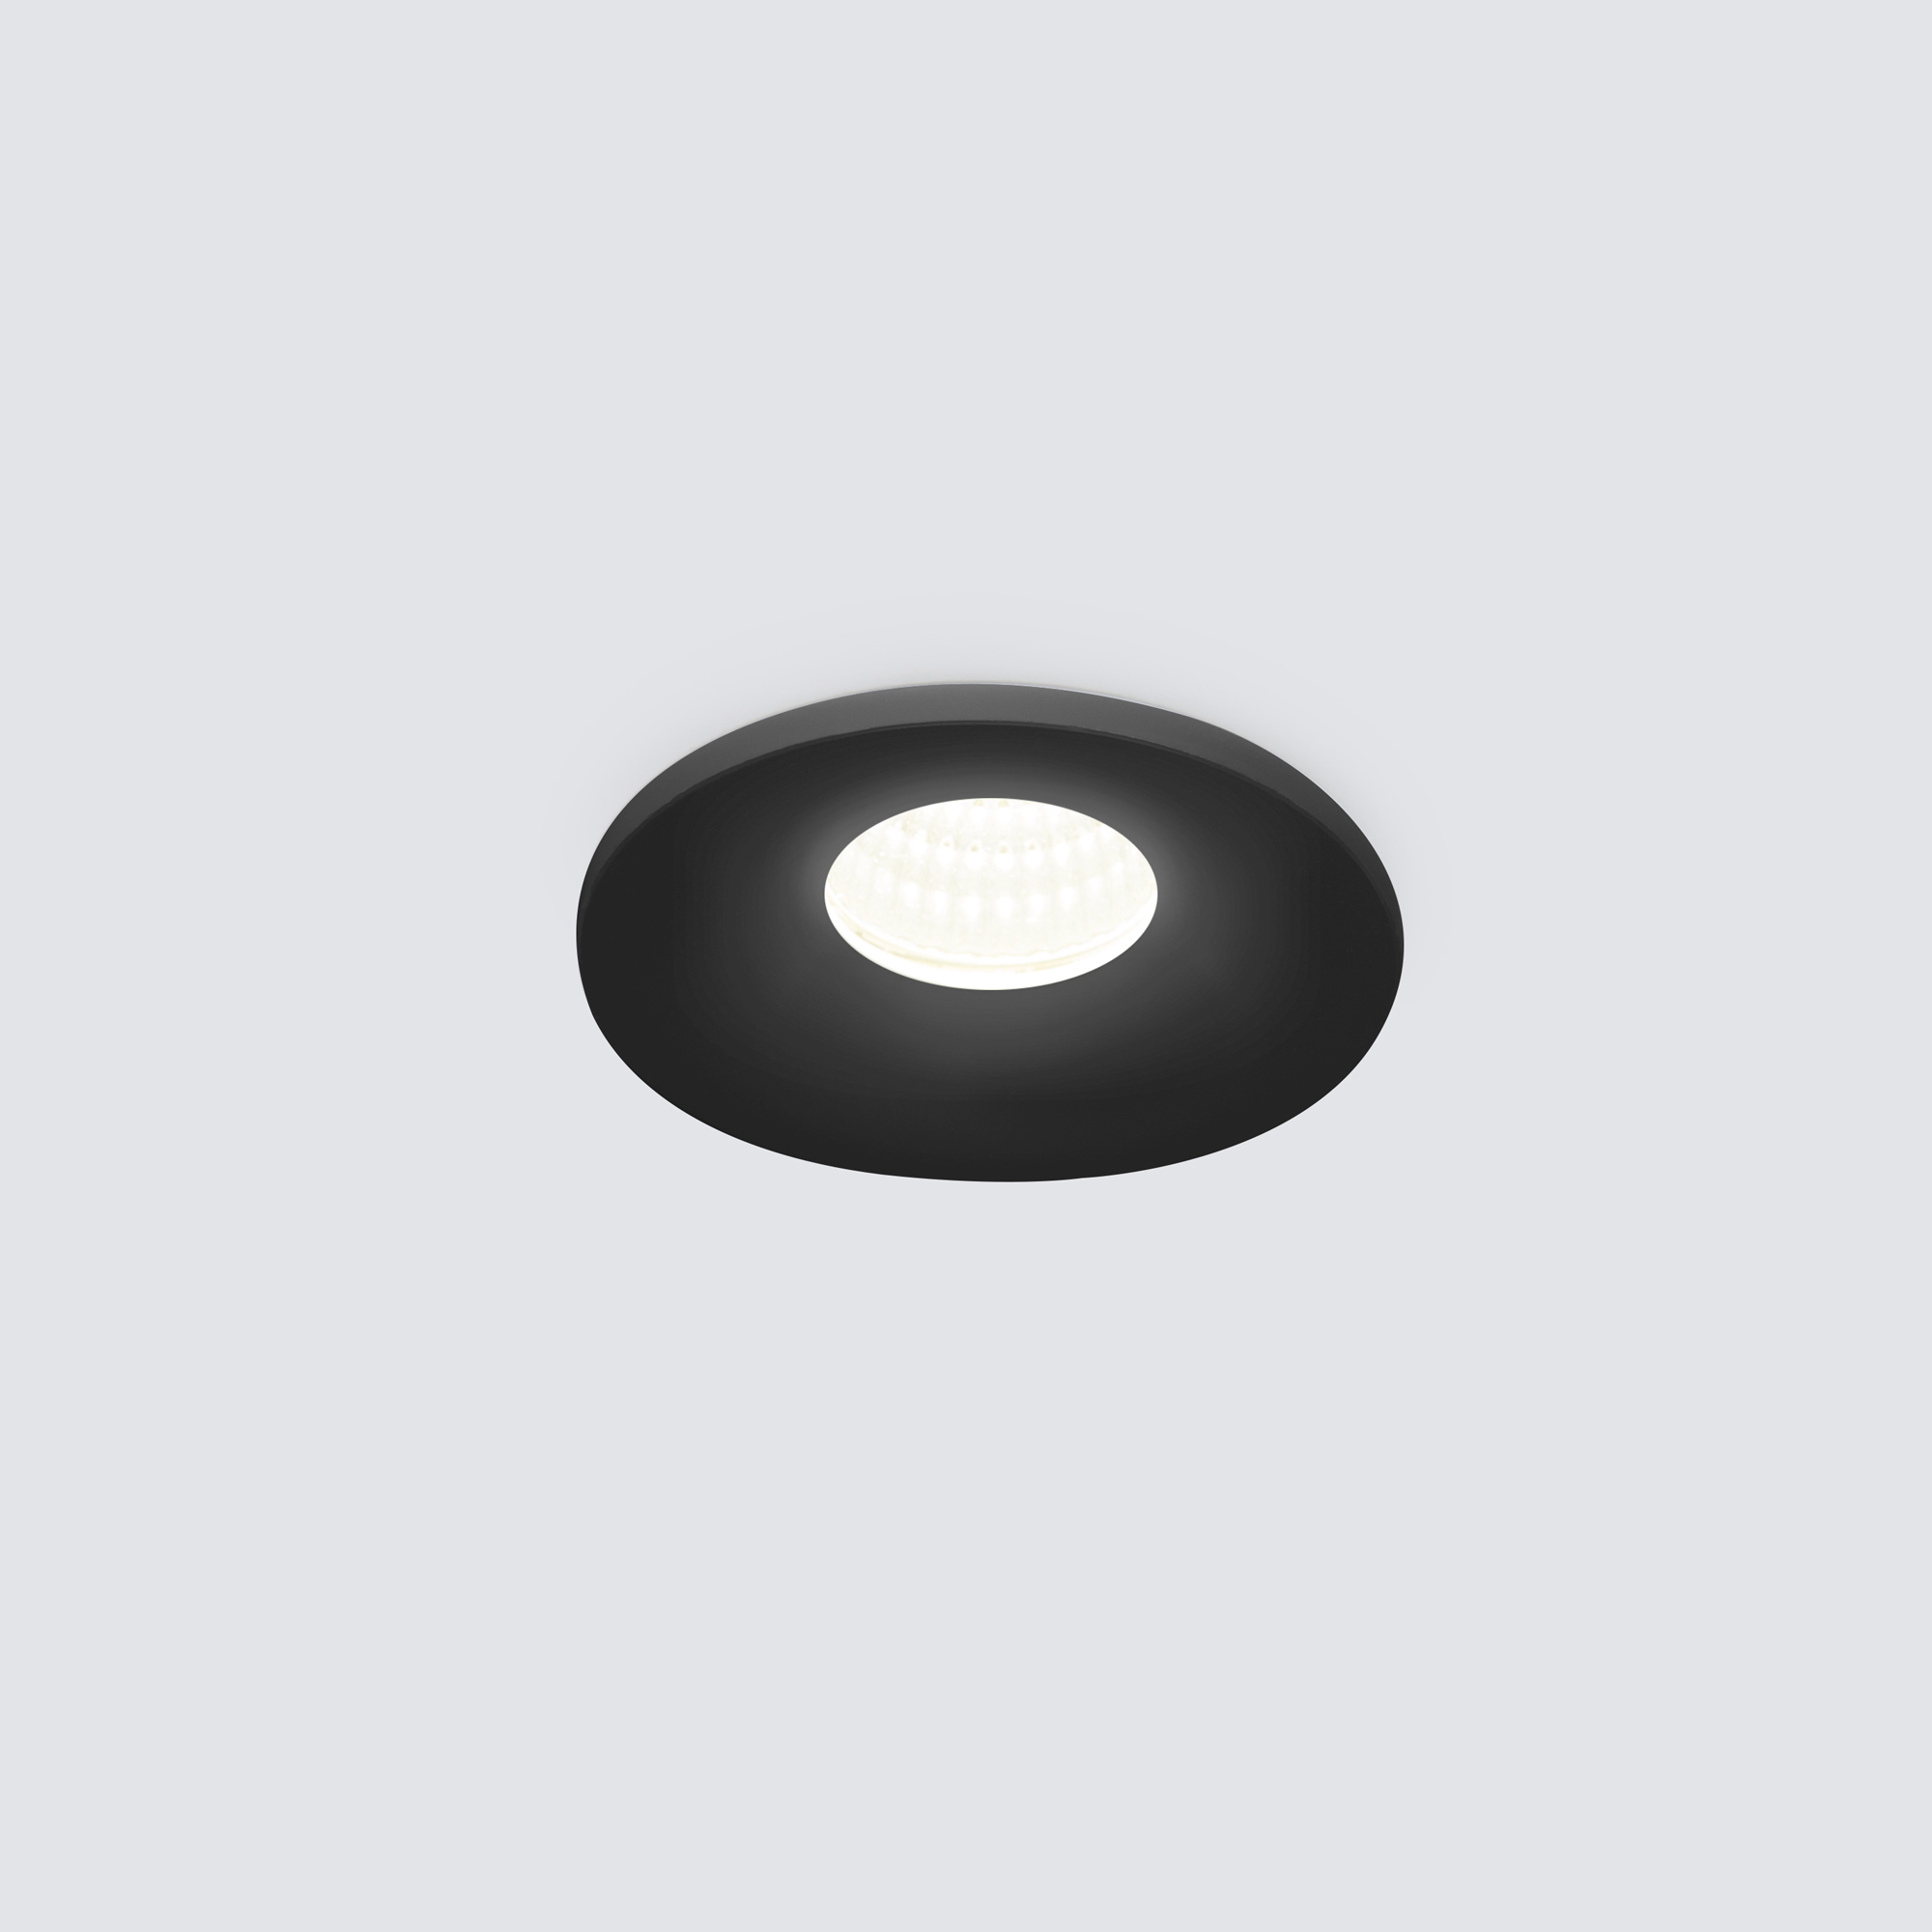 90188833 Светильник точечный светодиодный встраиваемый 15270/LED под отверстие 33 мм 1 м² нейтральный белый свет цвет черный STLM-0126163 ELEKTROSTANDARD